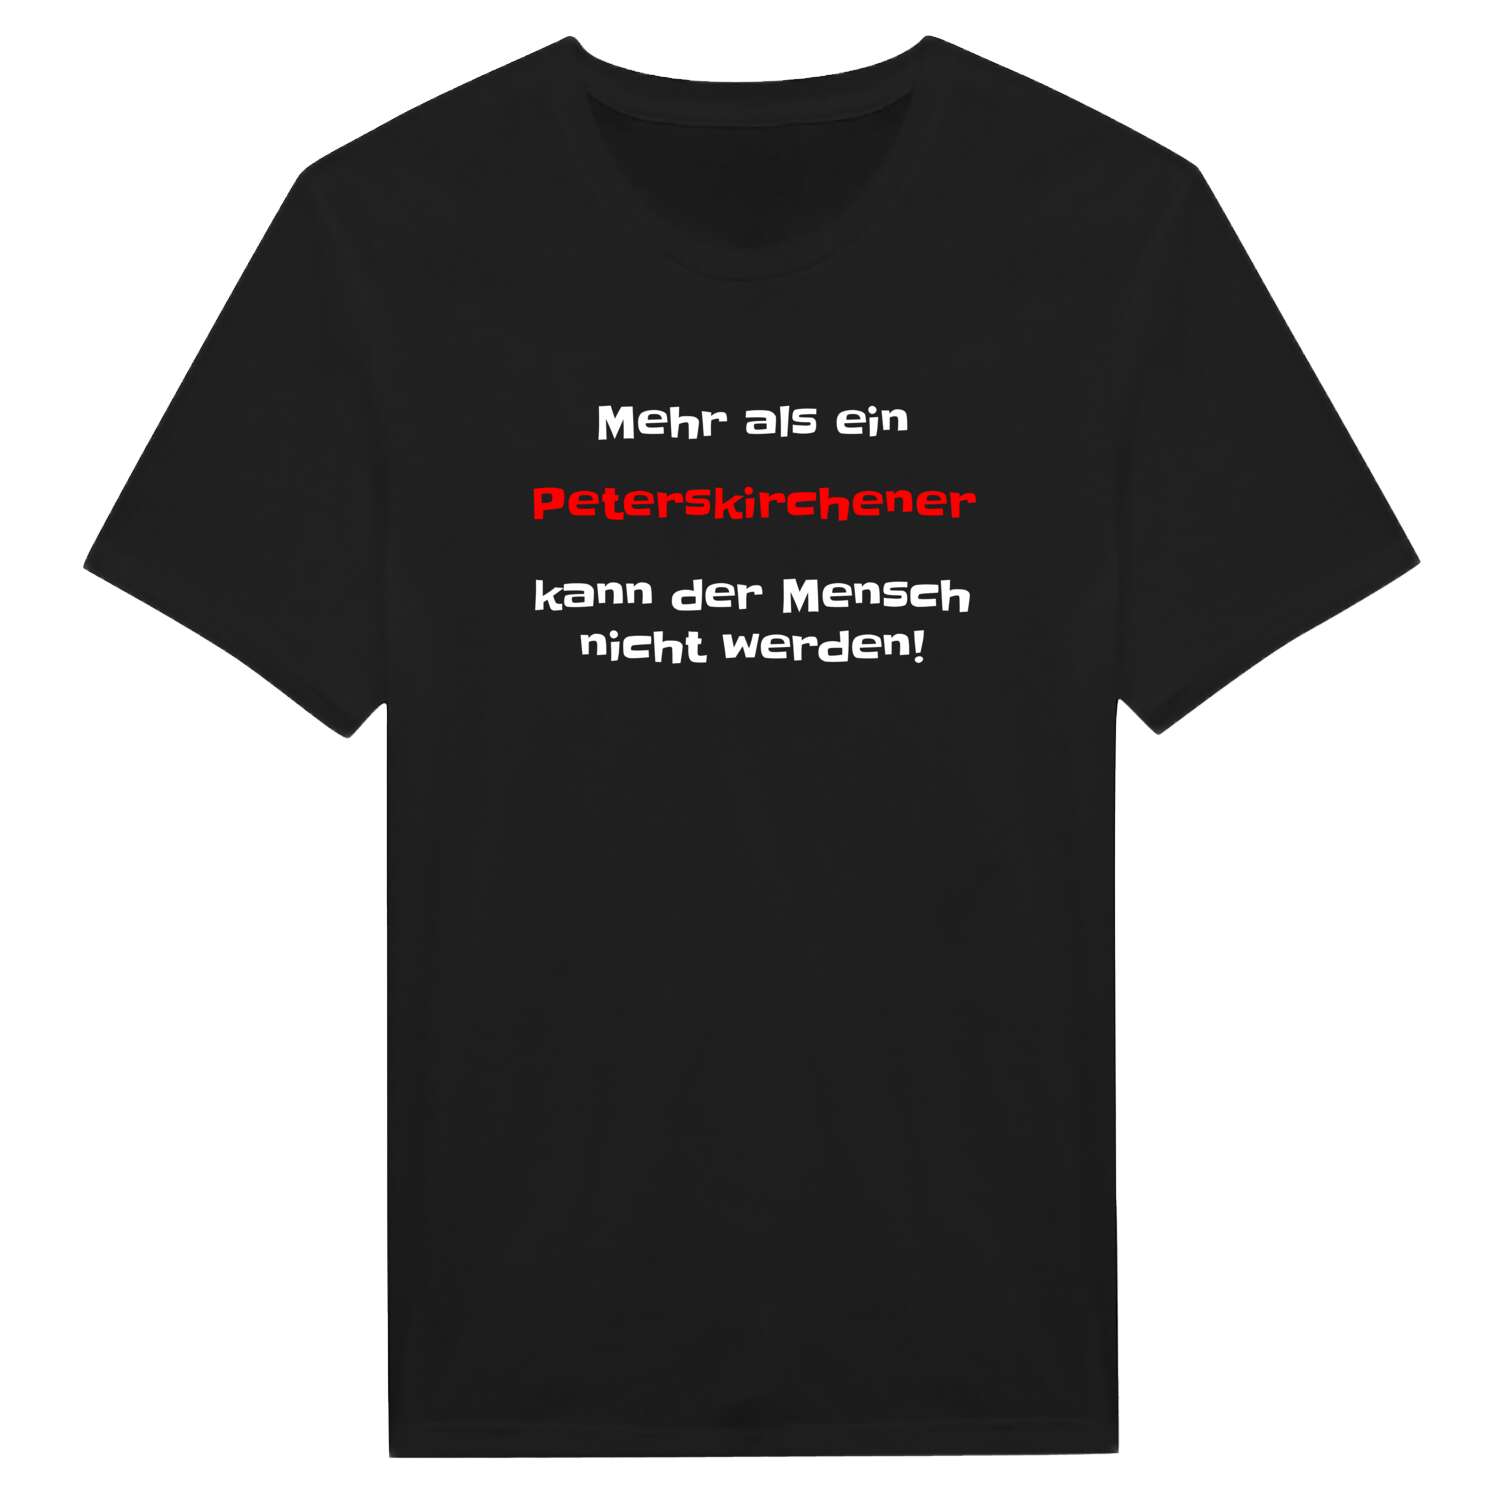 Peterskirchen T-Shirt »Mehr als ein«